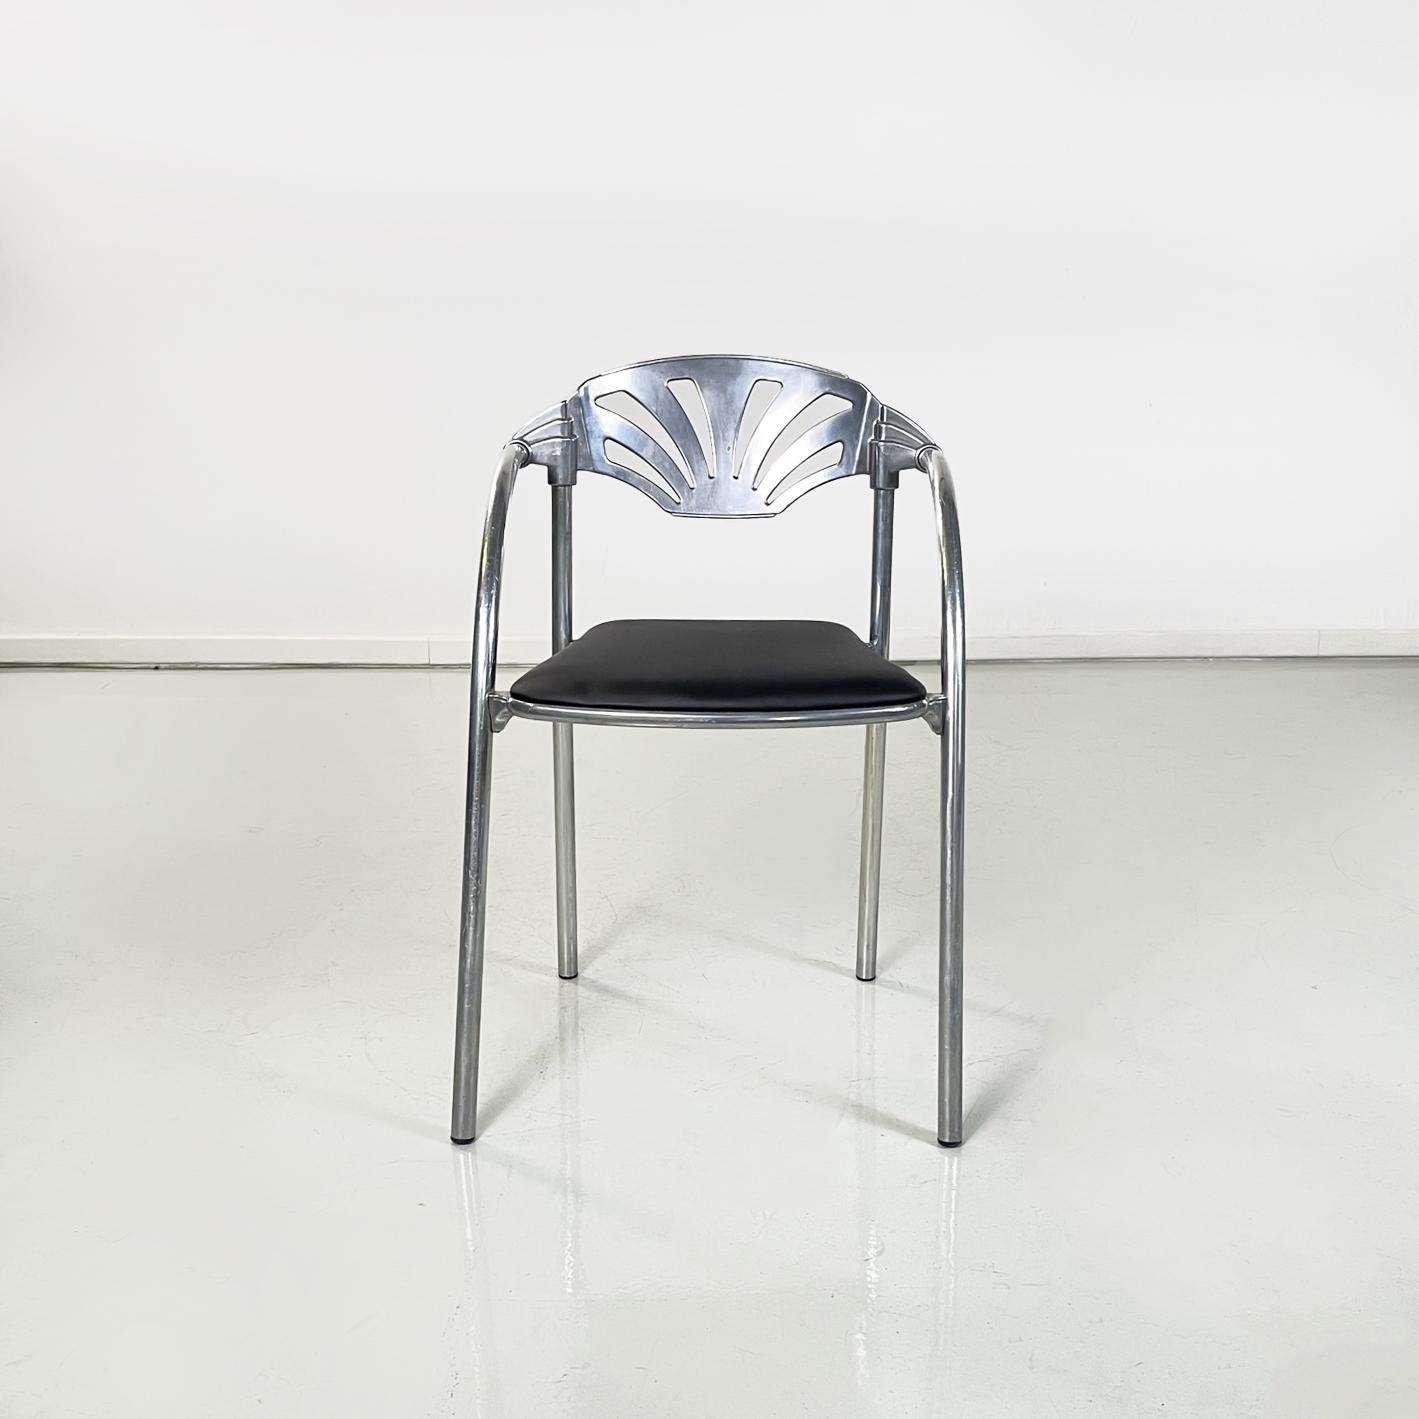 Modern Italian modern black sky Chairs Alisea by Lisa Bross for Studio Simonetti, 1980s